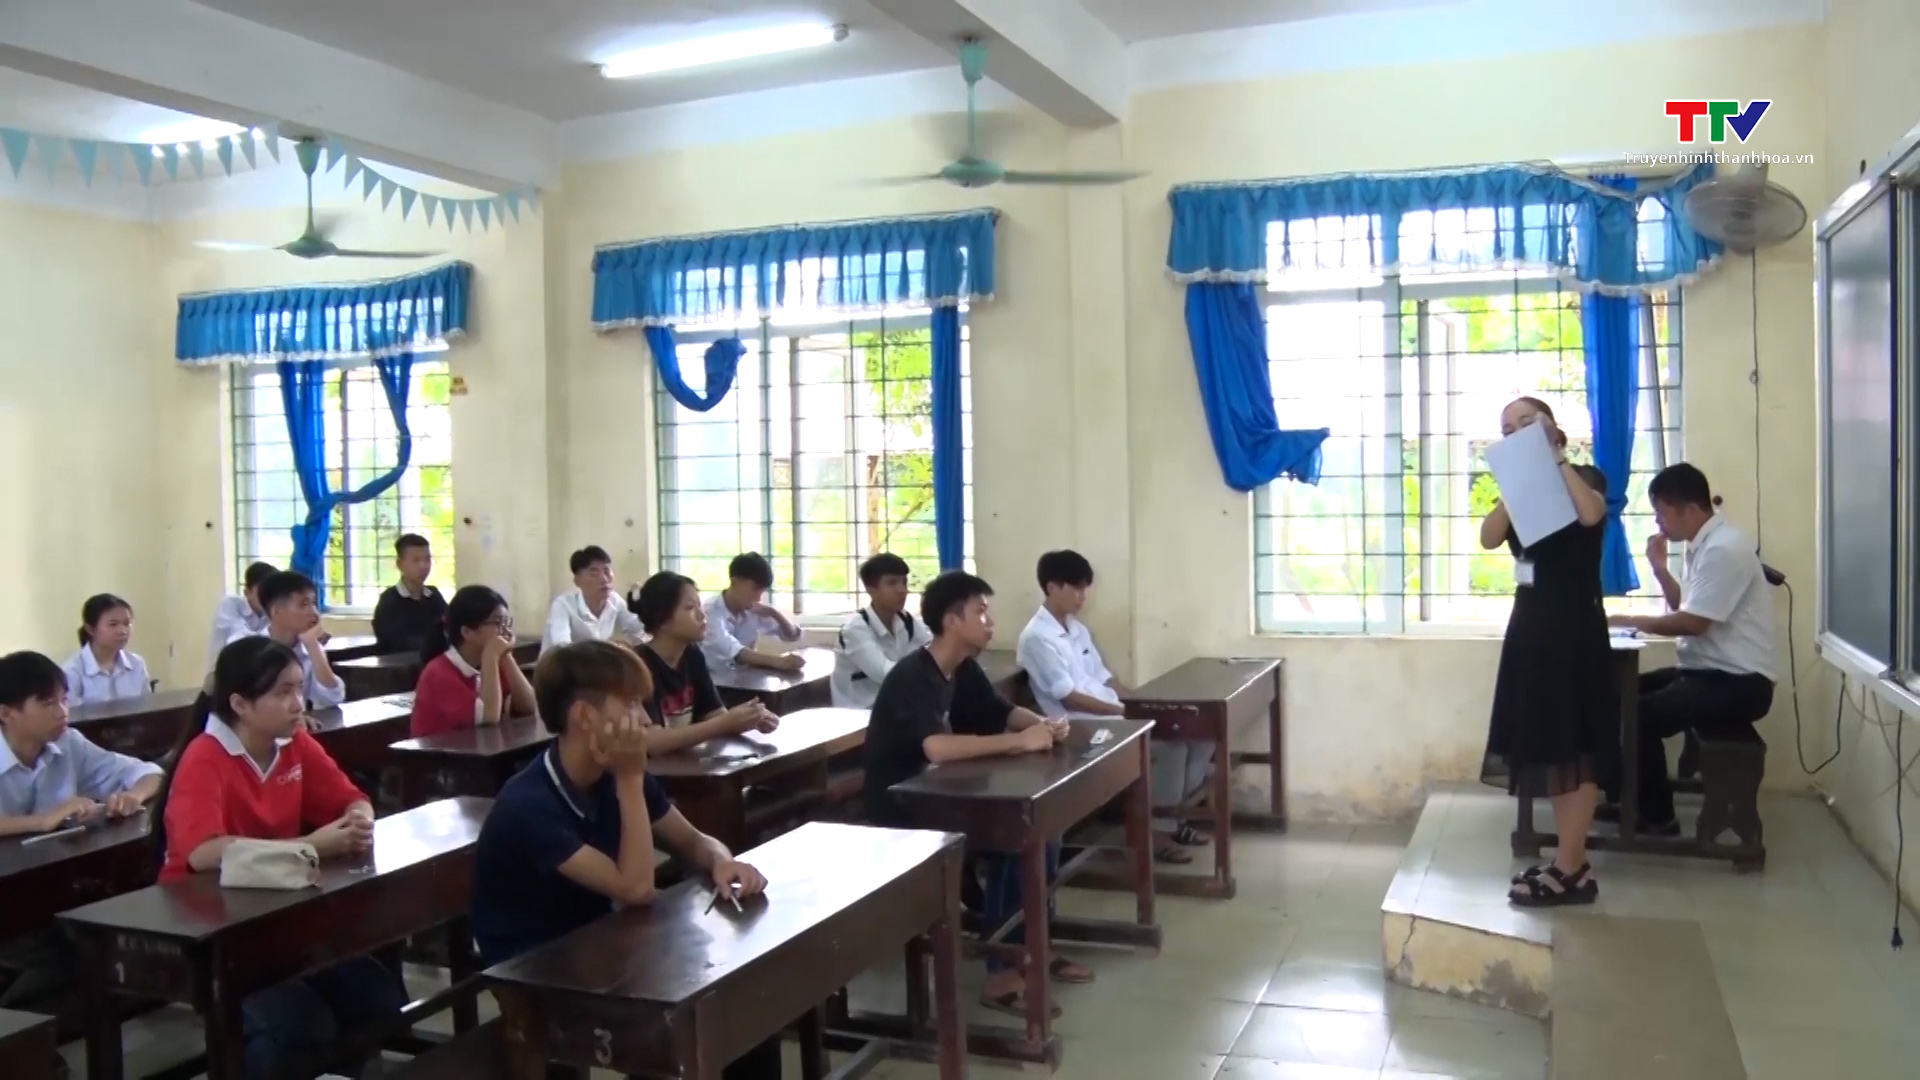 Huyện Cẩm Thủy: Buổi sáng thi môn Ngữ văn toàn huyện có 07 thí sinh vắng mặt- Ảnh 1.